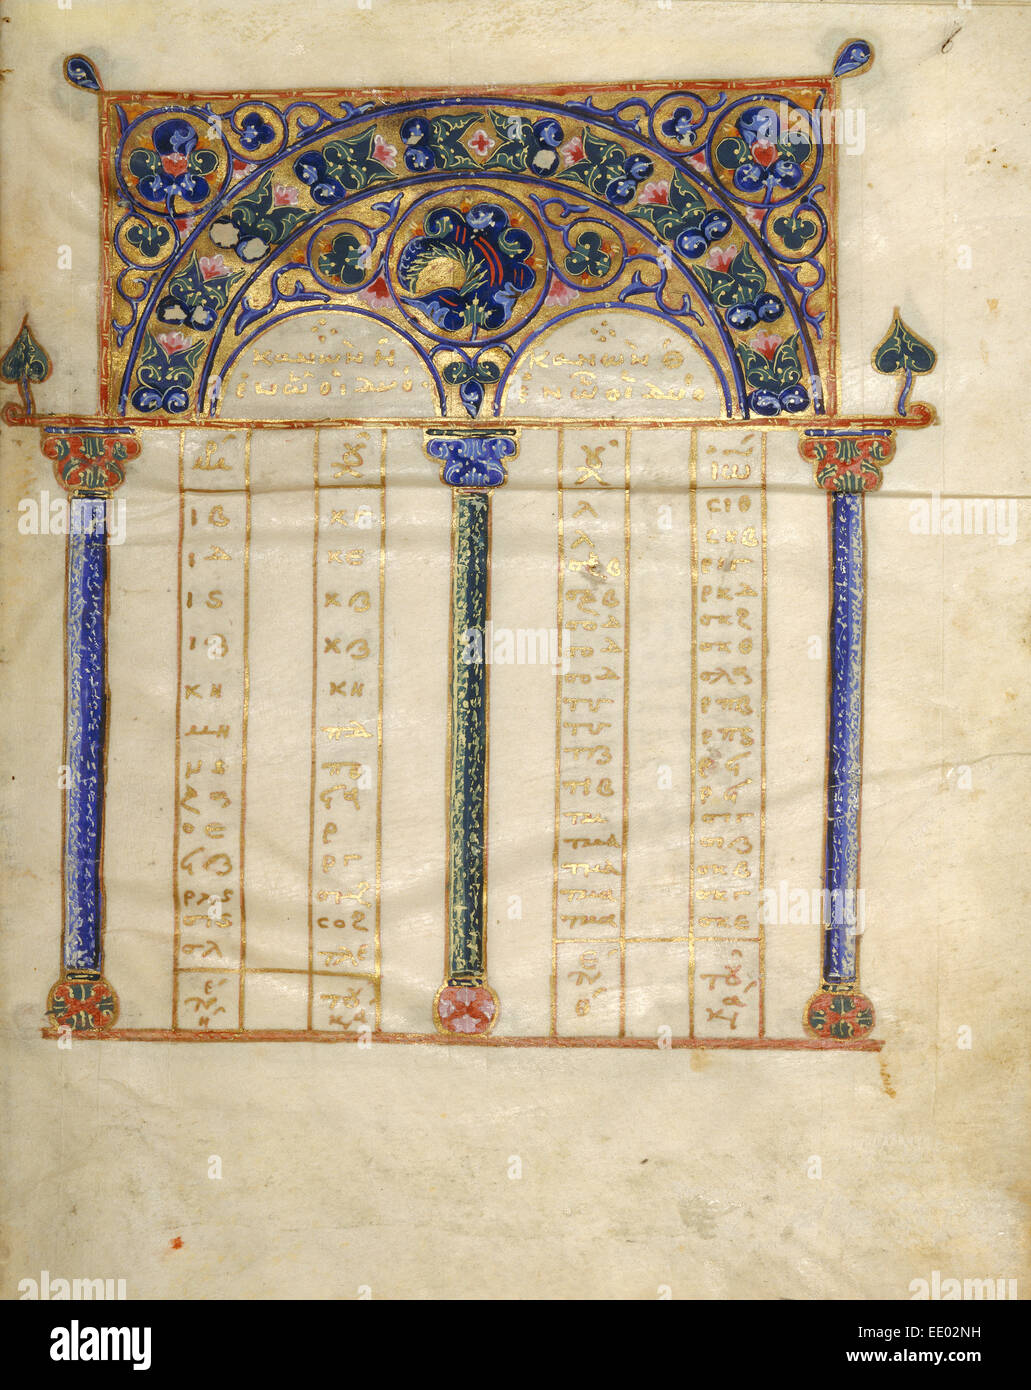 Page Table Canon ; inconnu ; Constantinople, Turquie, Asie ; 1133 Tempera ; couleurs, feuille d'or, d'or, peinture et encre sur parchemin Banque D'Images